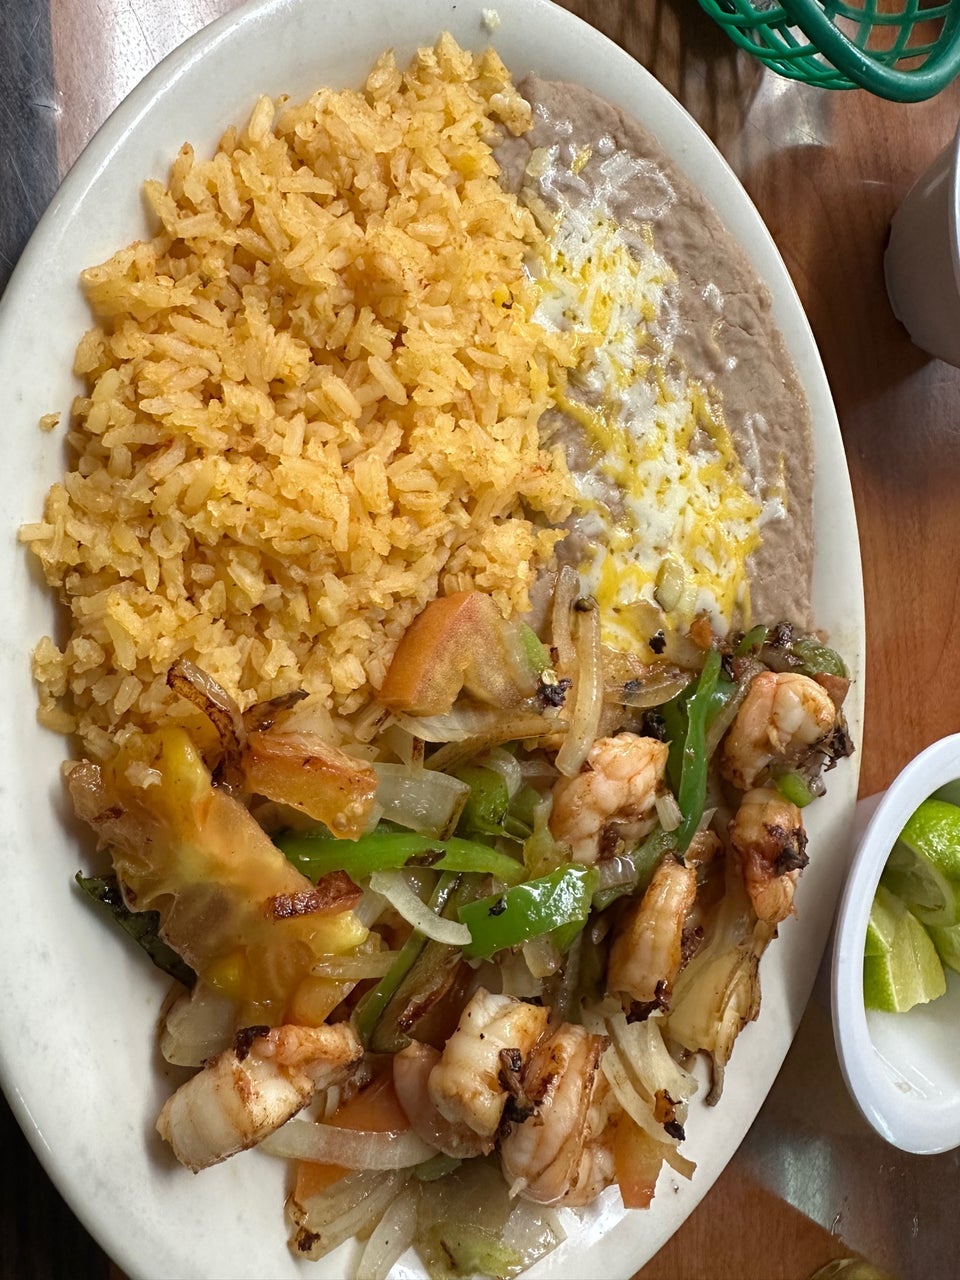 La Paz Mexican Restaurant